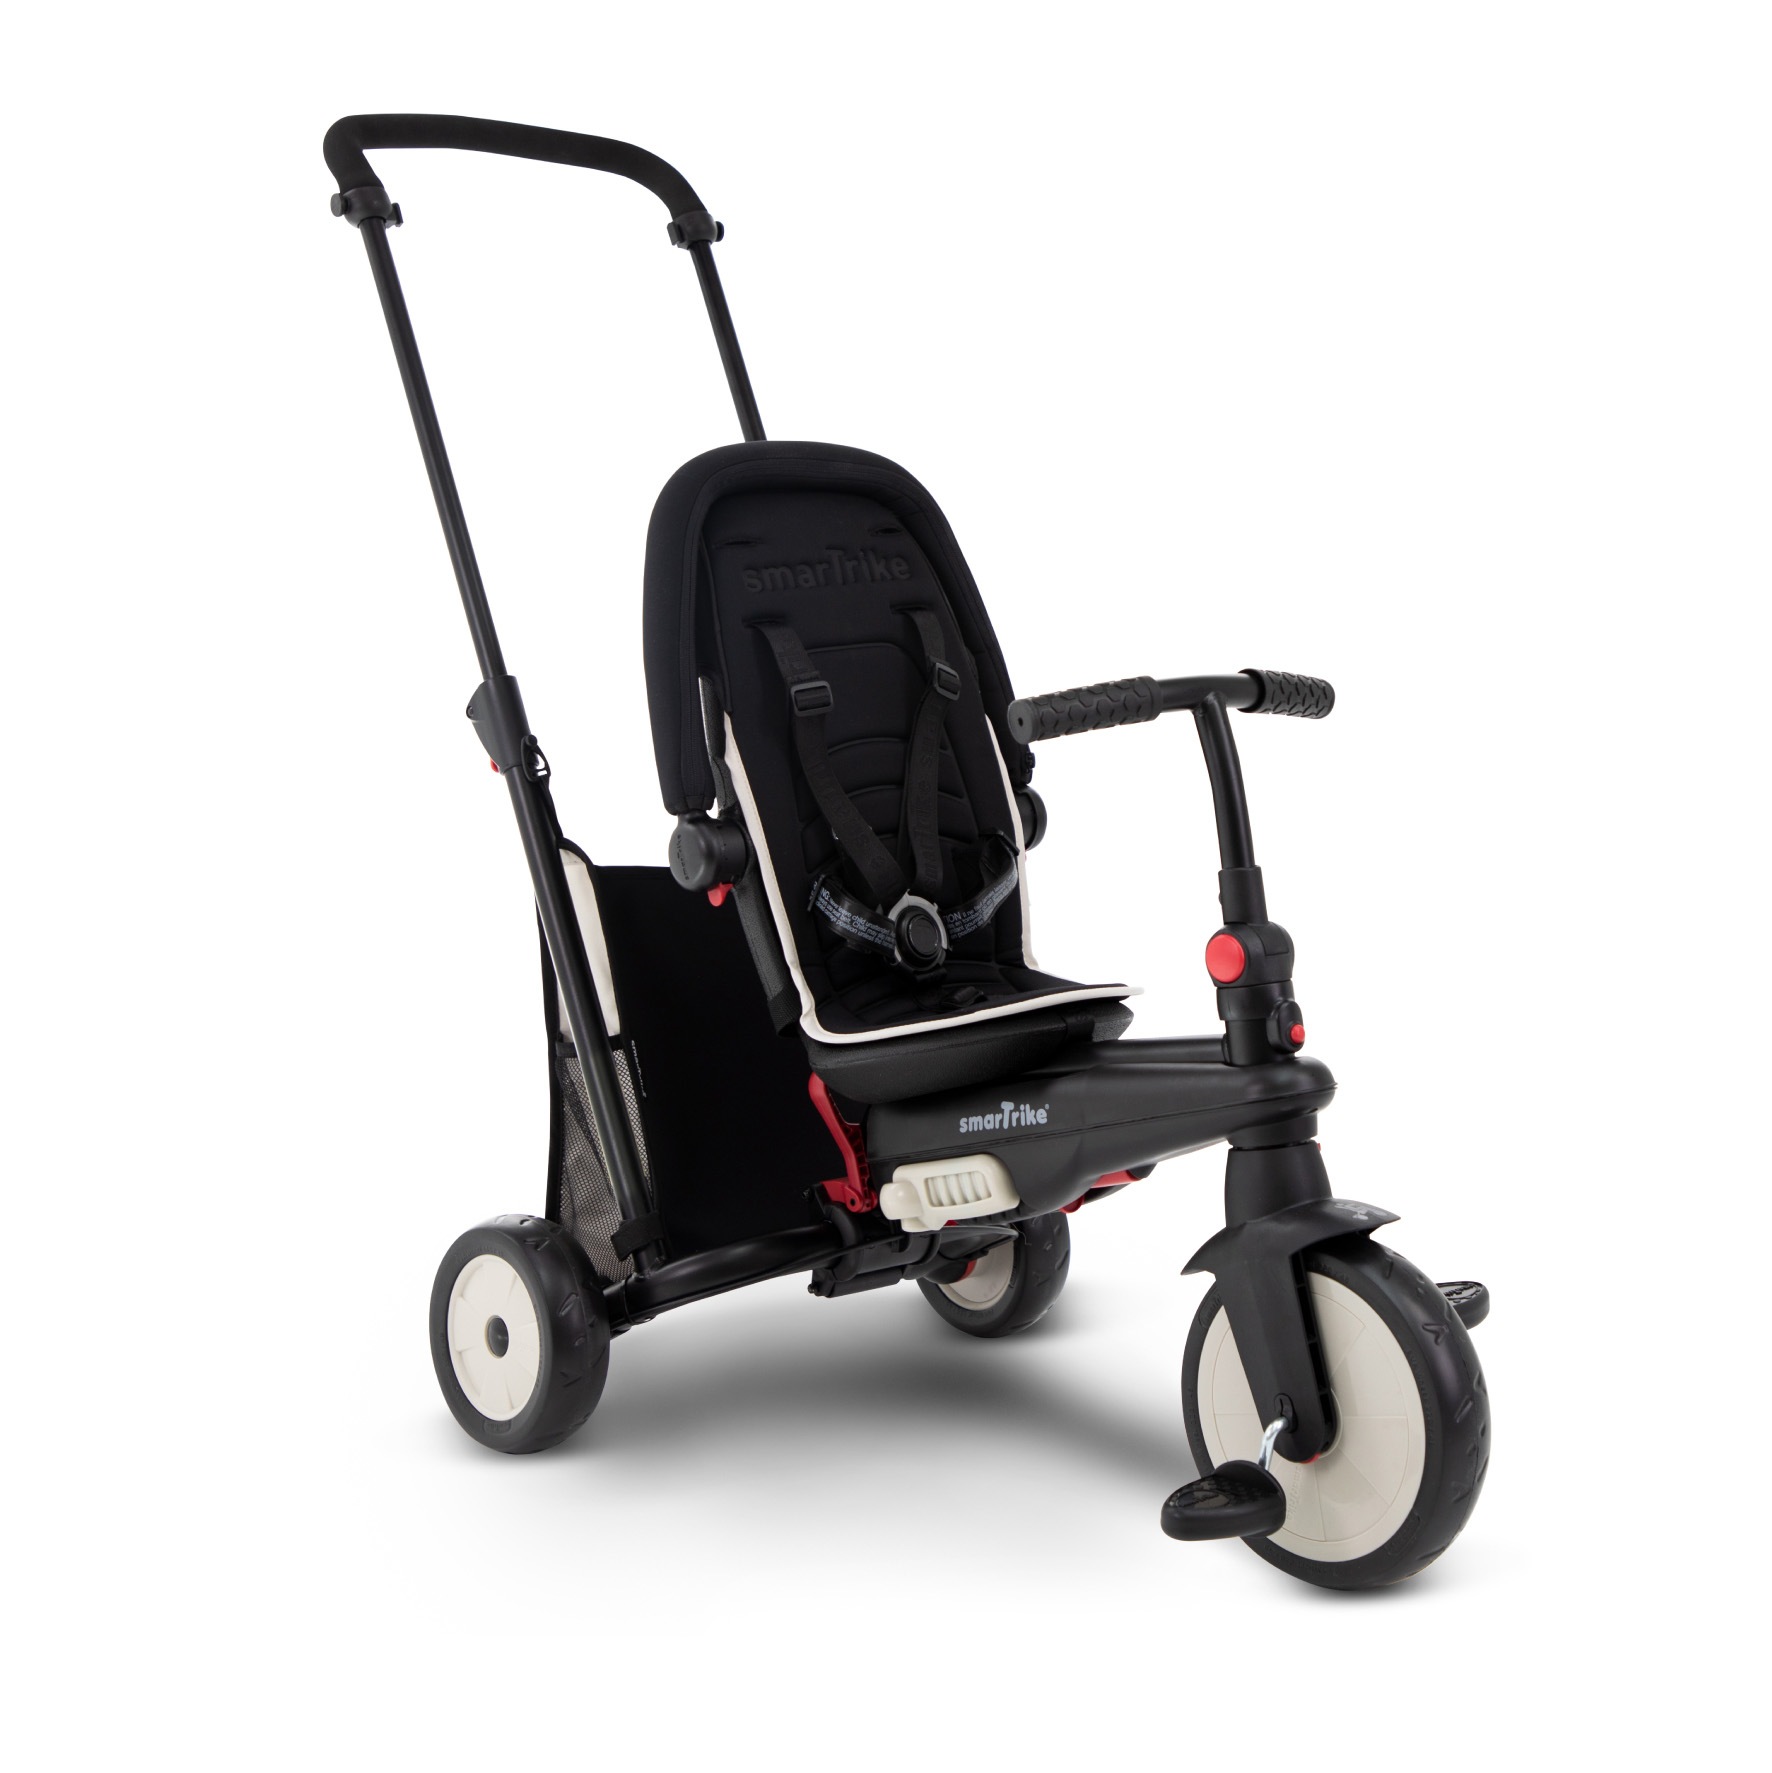 Triciclo pieghevole 6in1 con schienale reclinabile, maniglione direzionale ed allungabile e ammortizzatori brevettati: smartrike str3 per bambini dai 10 mesi ai 3 anni - nero - SMART TRIKE